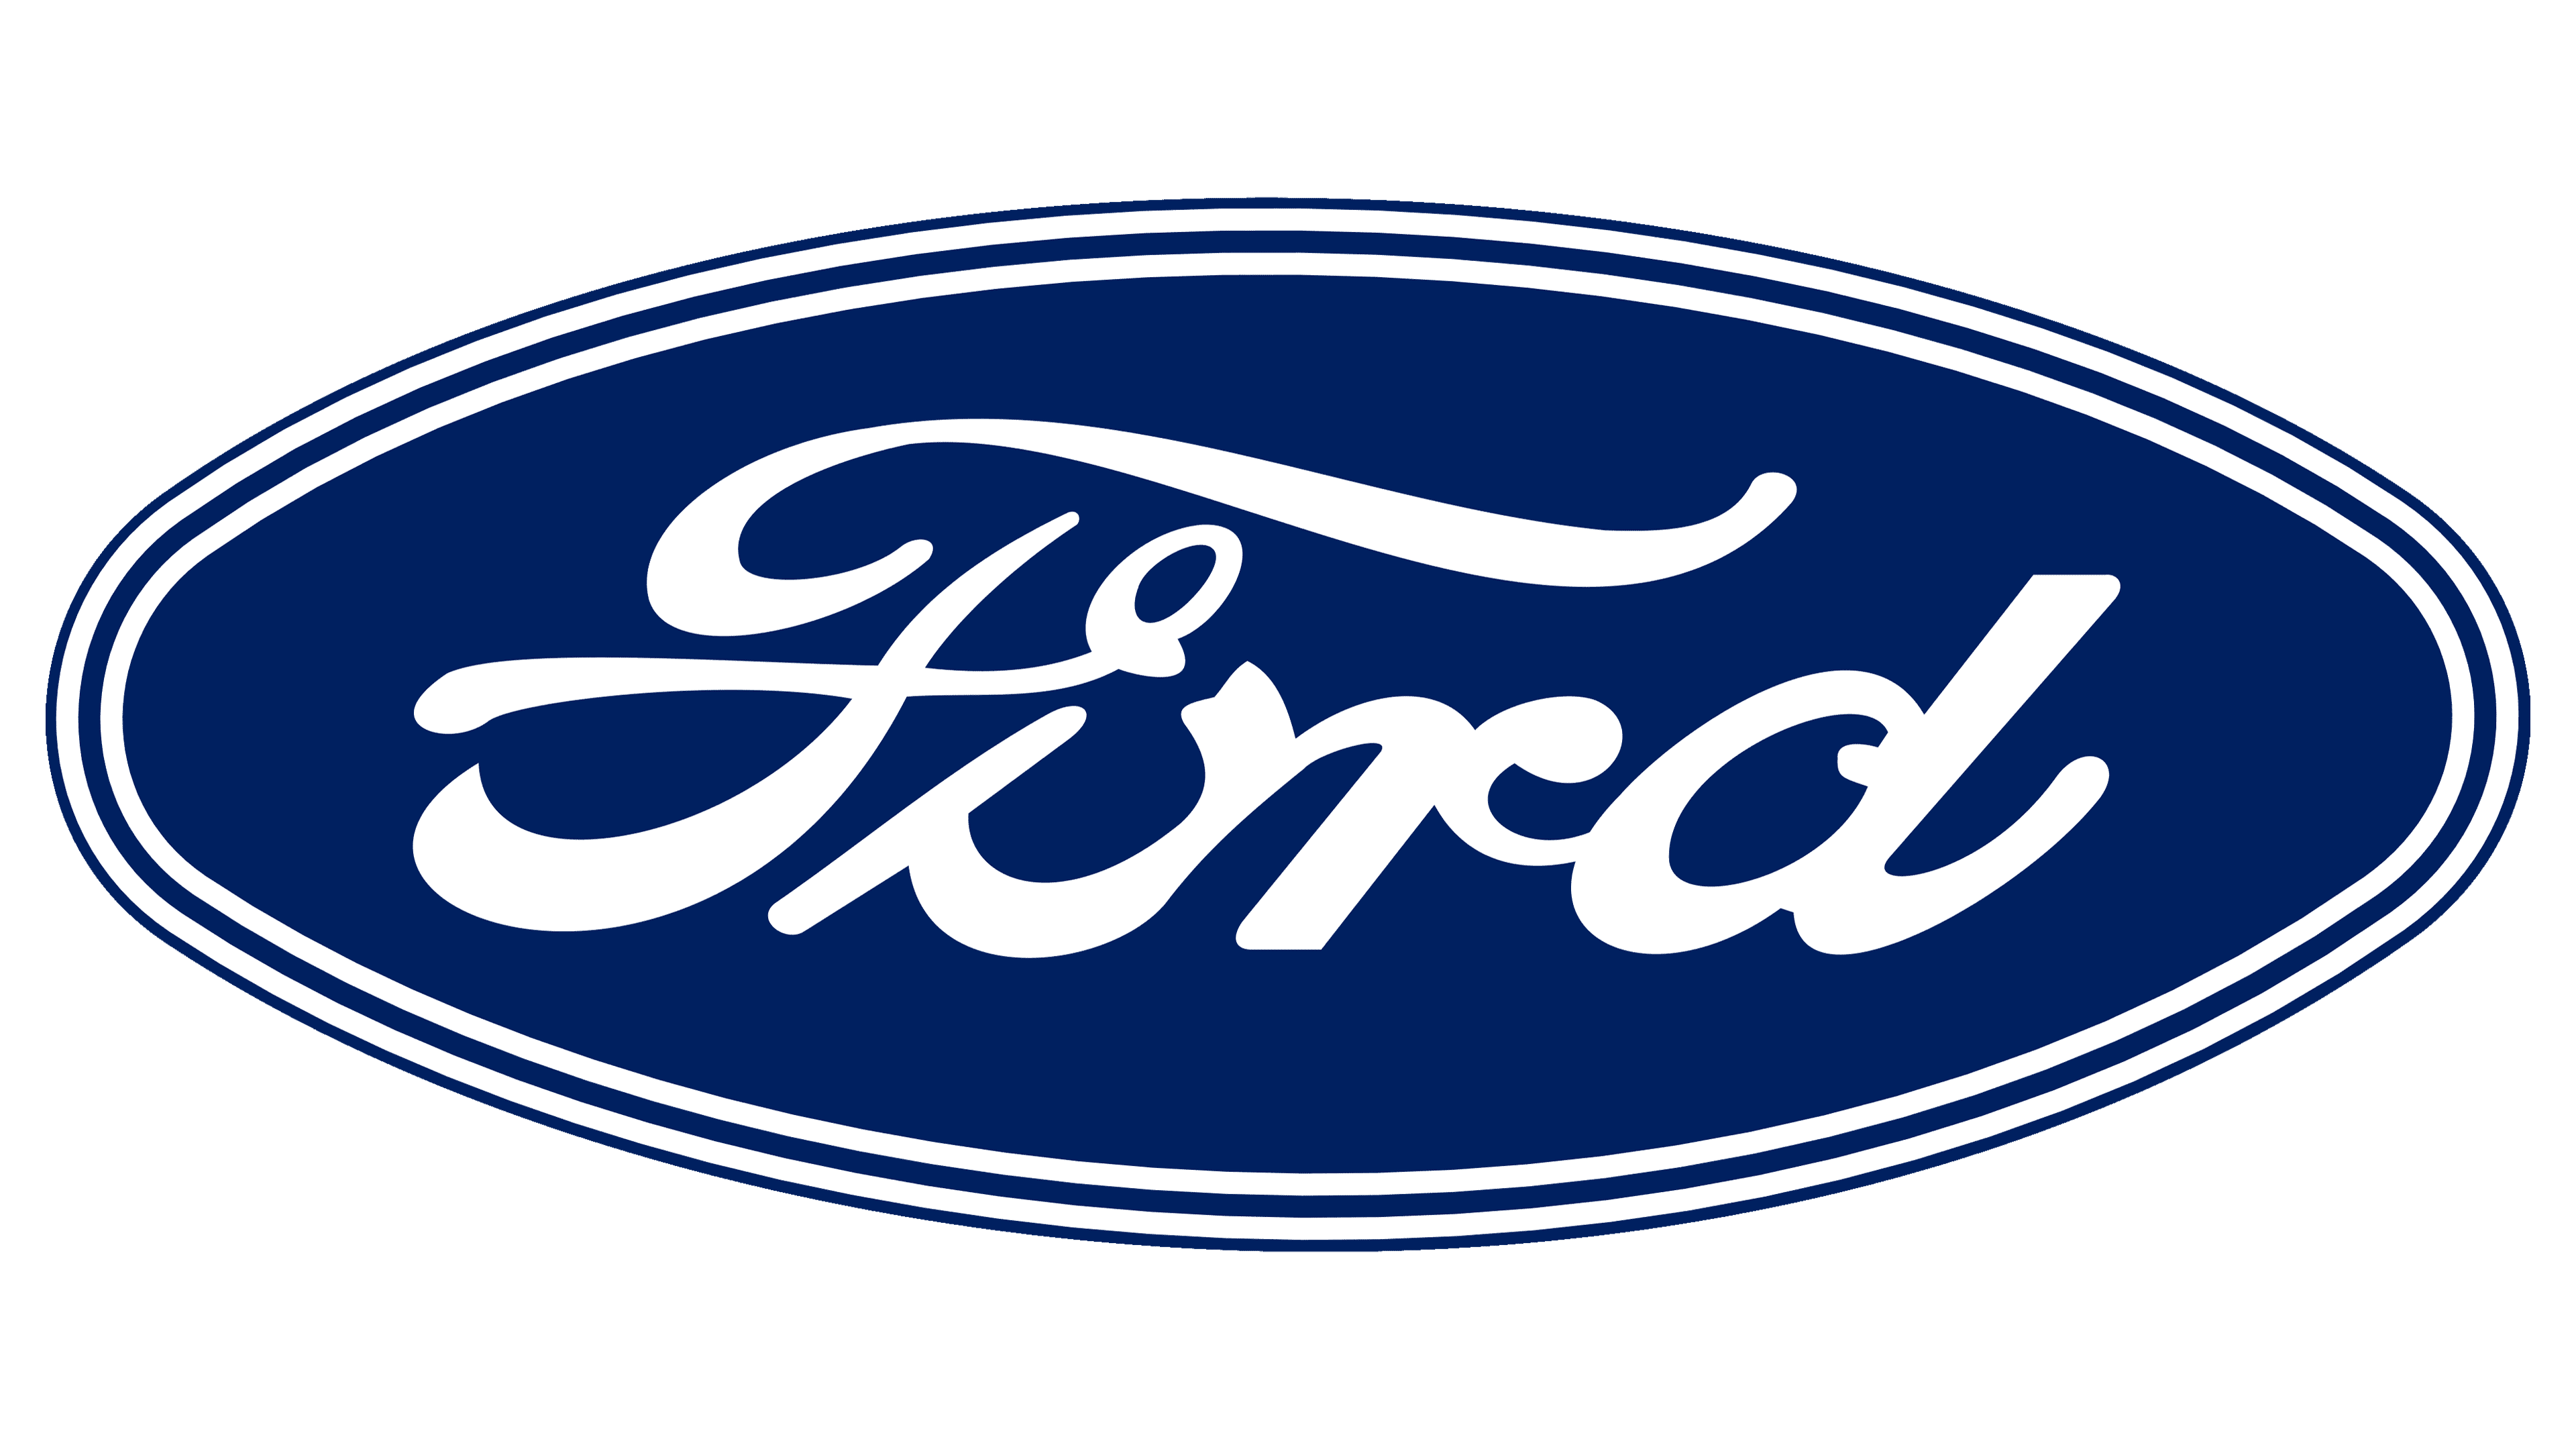 GB : Logo Ford / FR : Logo Ford by Arash68